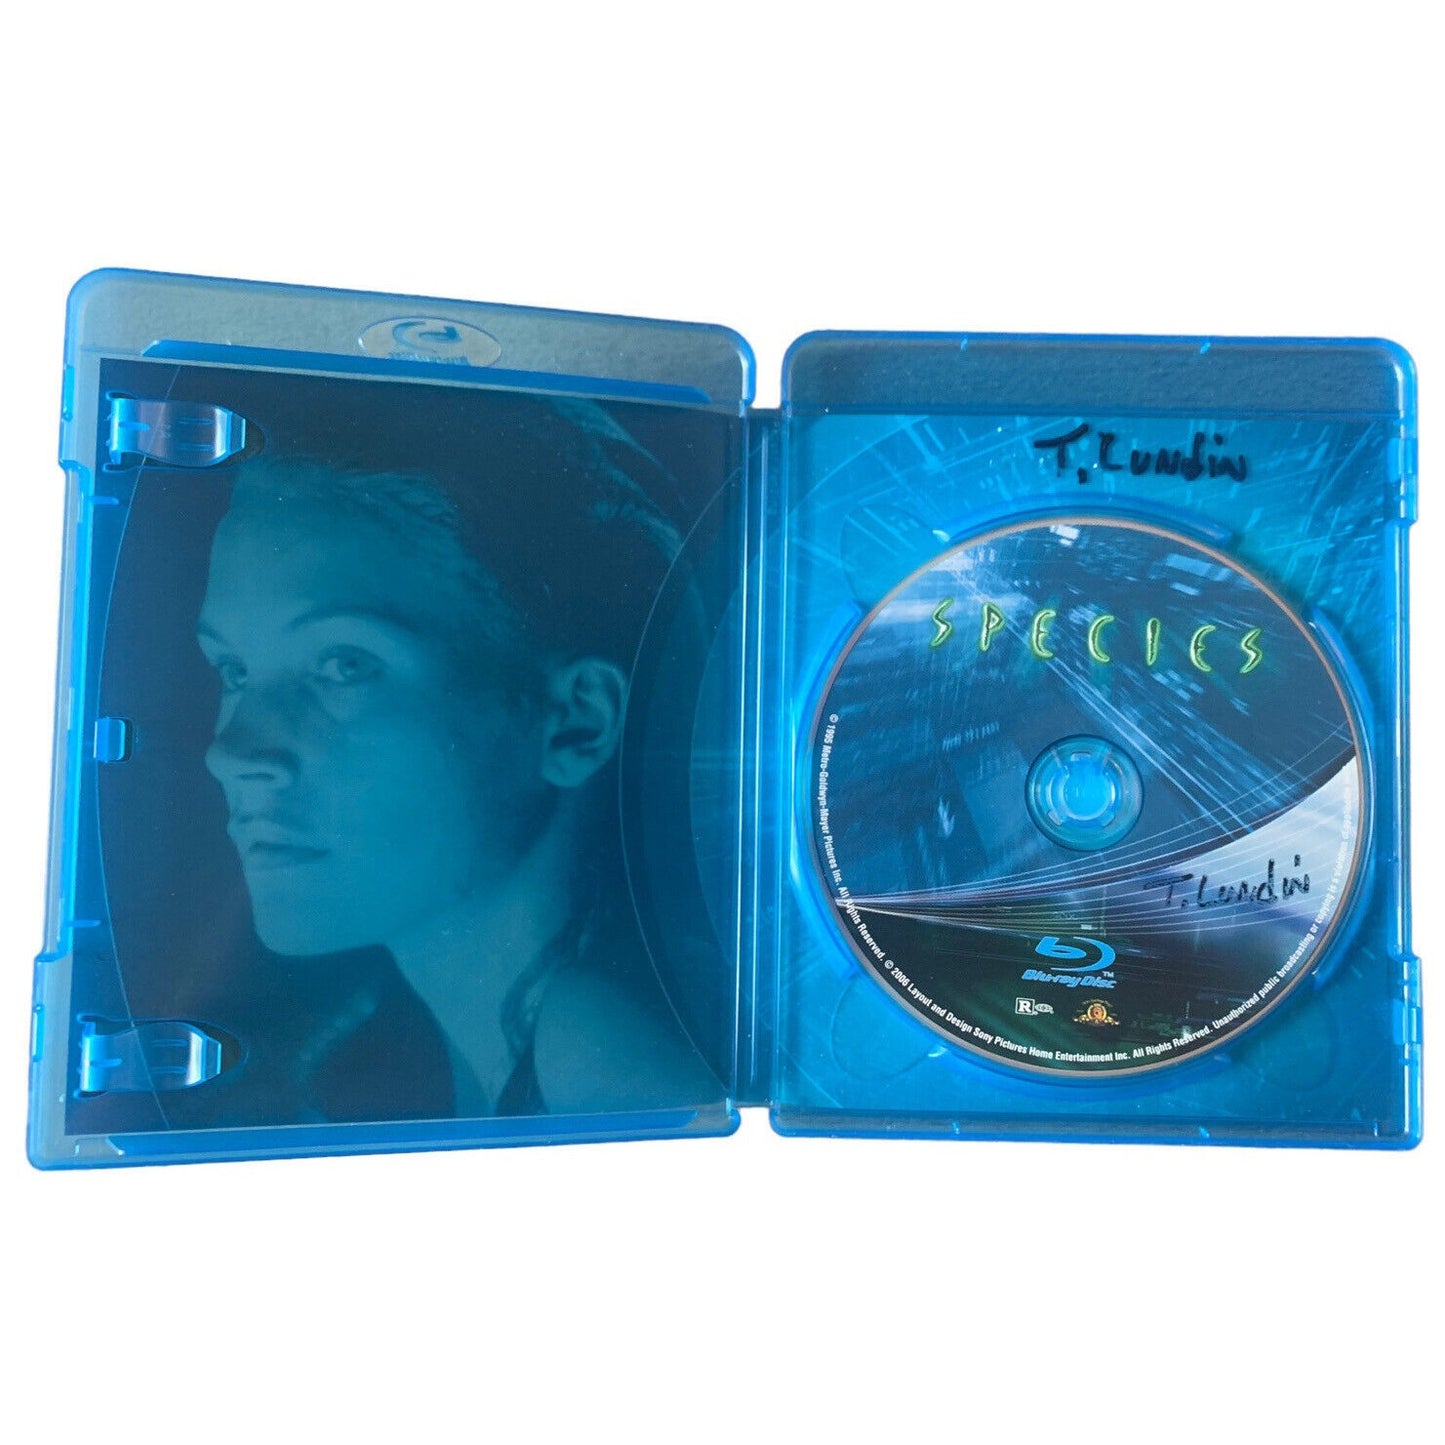 Species 2 Blu-Ray DVD